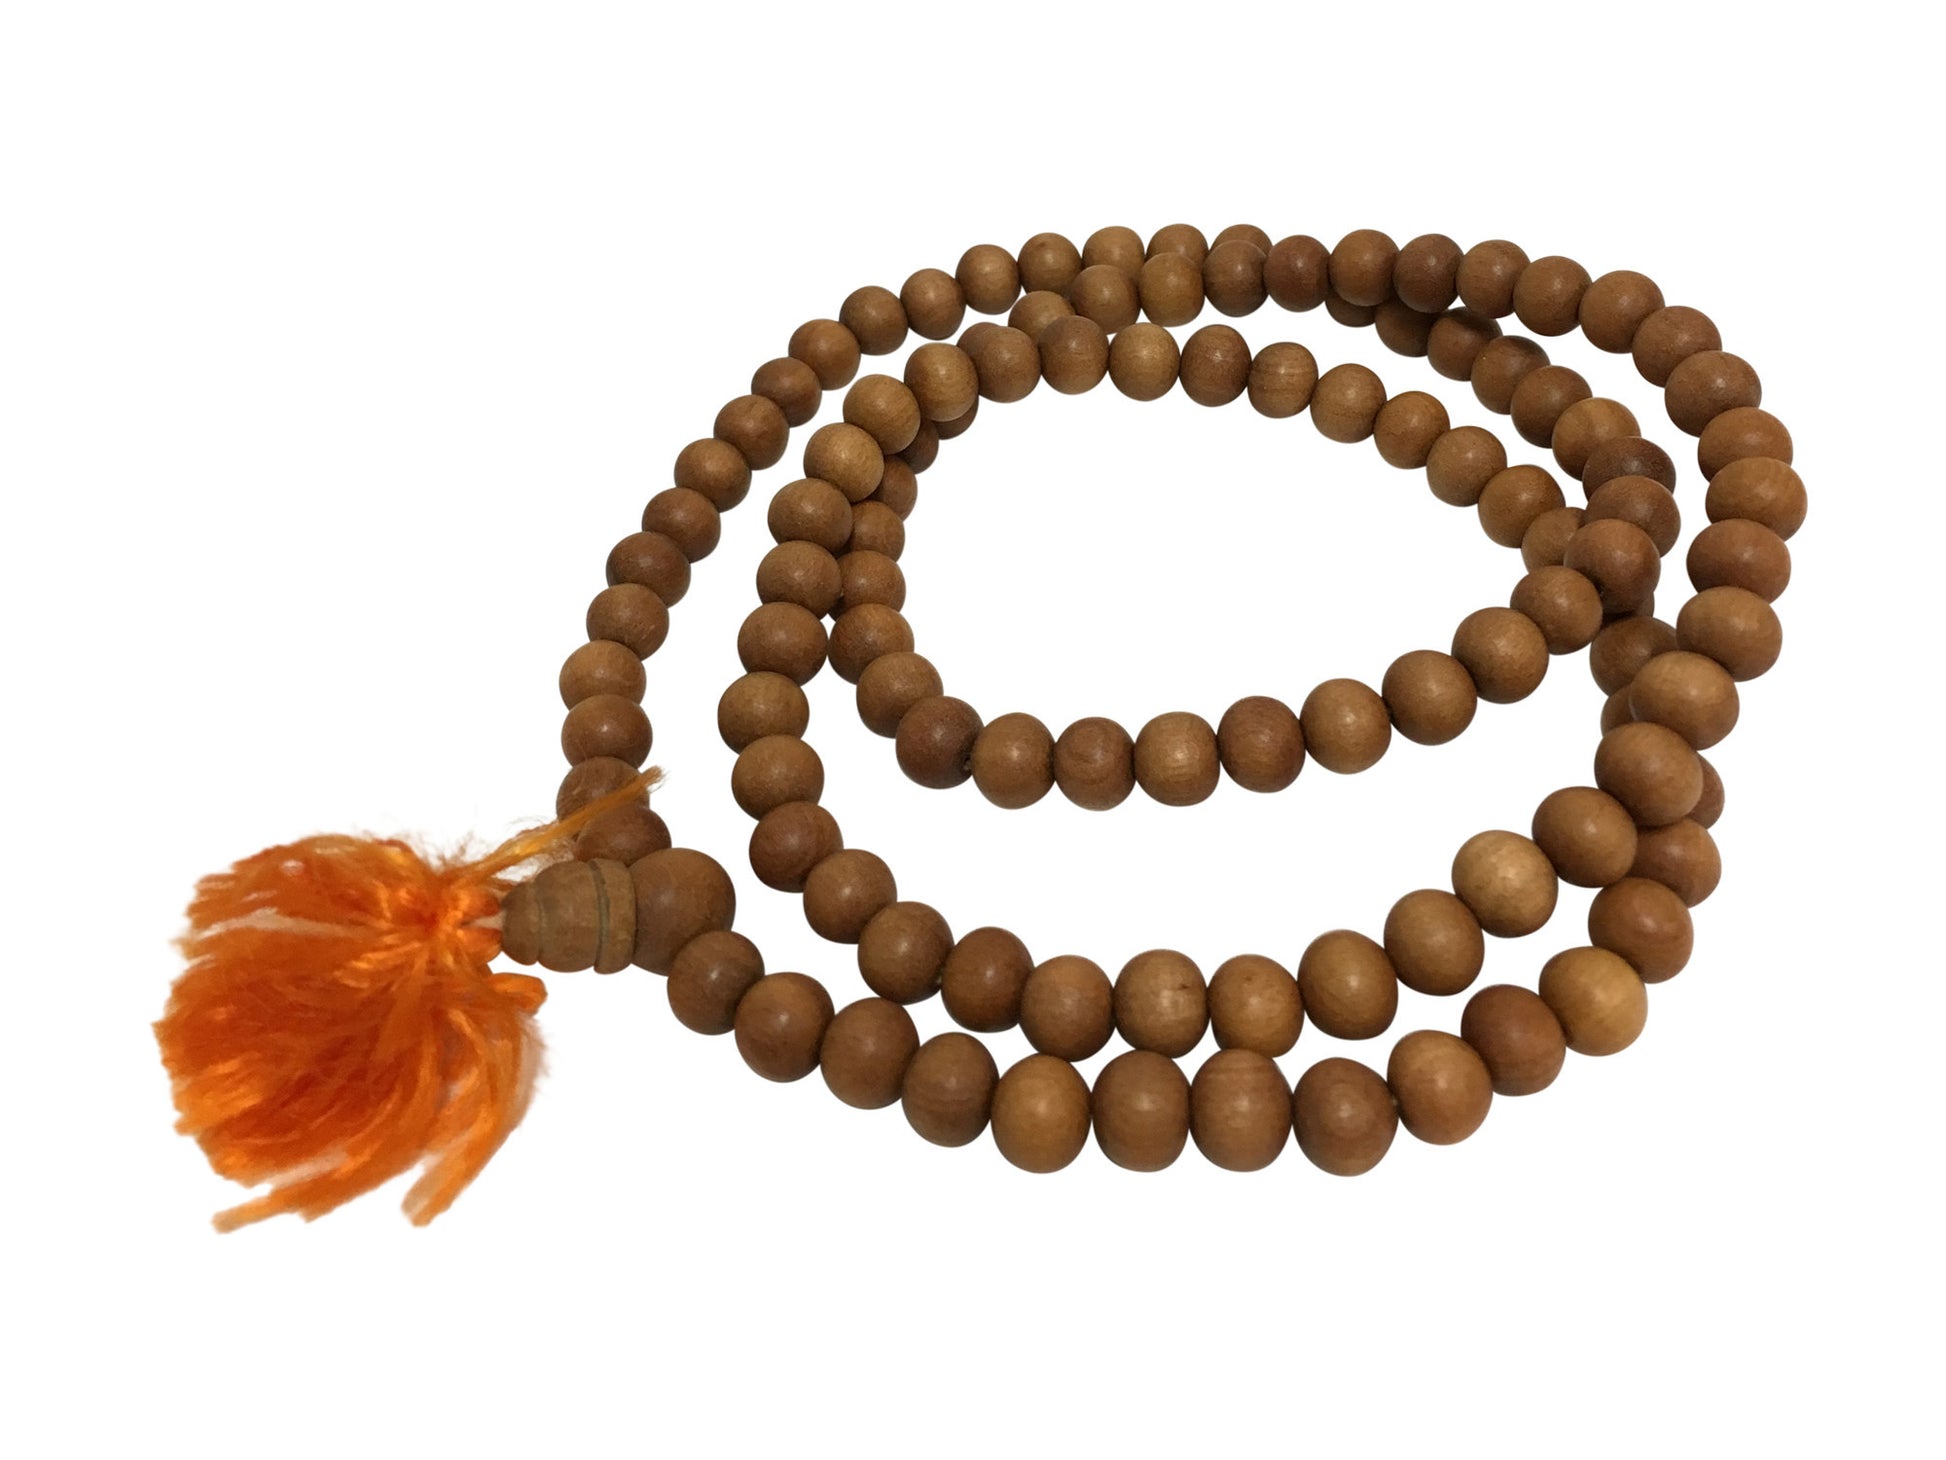 Mala Bead Necklace: Chakra Meditation Rosary For Yoga, Yoga For